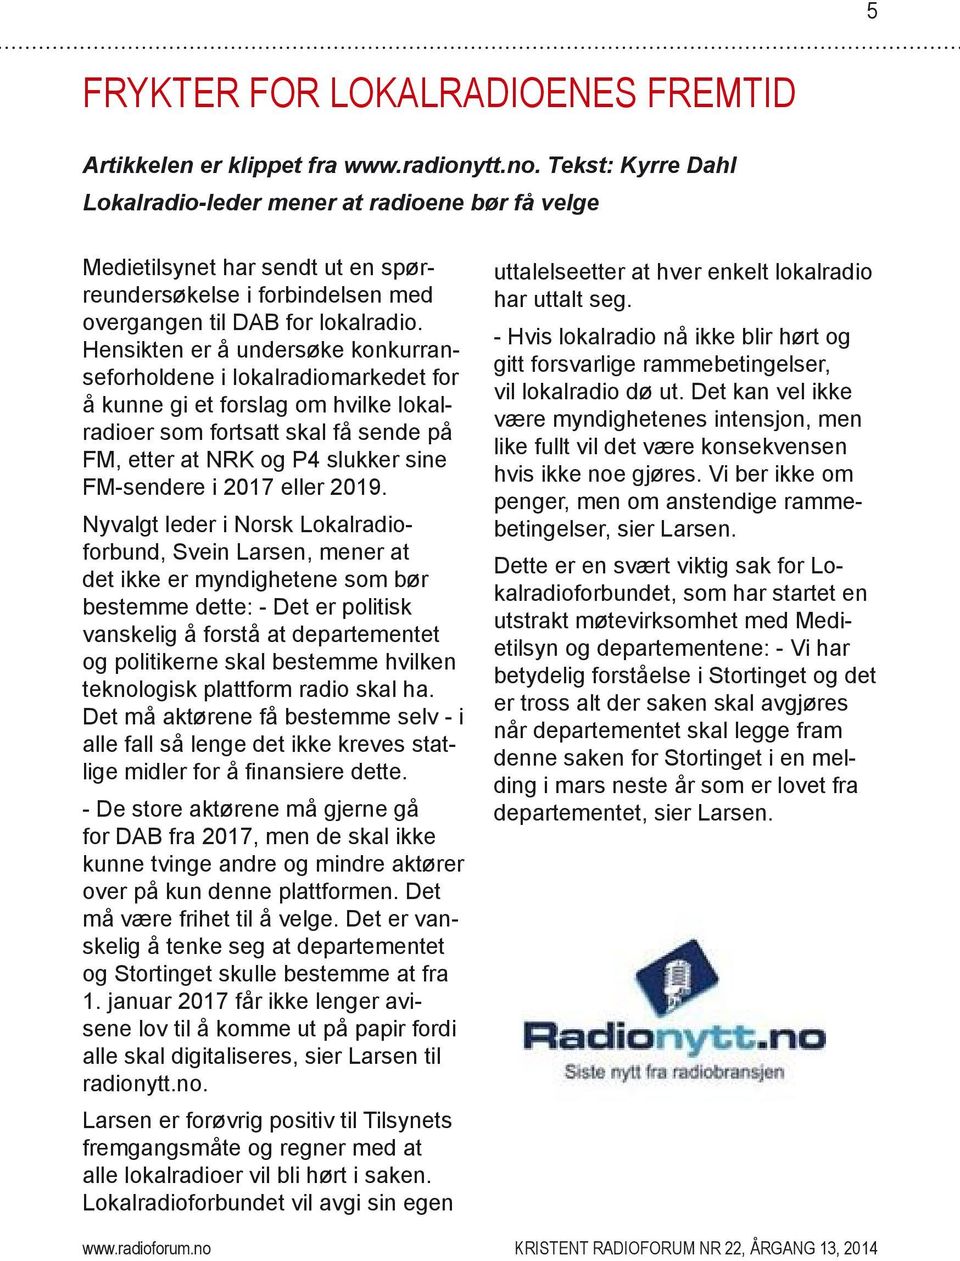 Hensikten er å undersøke konkurranseforholdene i lokalradiomarkedet for å kunne gi et forslag om hvilke lokalradioer som fortsatt skal få sende på FM, etter at NRK og P4 slukker sine FM-sendere i